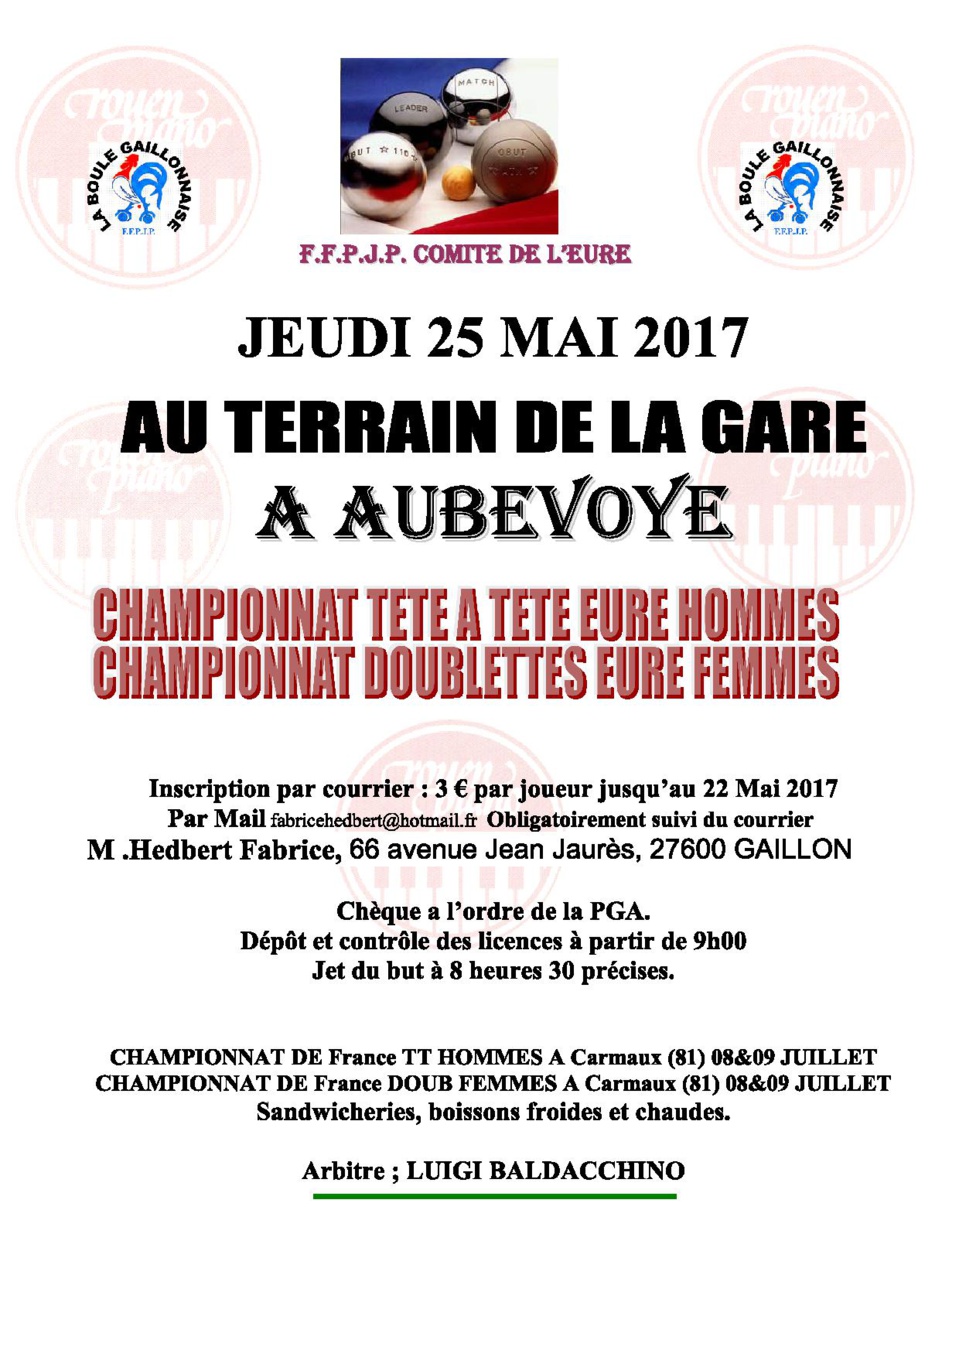 Championnat de L'Eure  tete à tete Masculin et doublette feminin : Attention Jet du but  8h30 pour tous